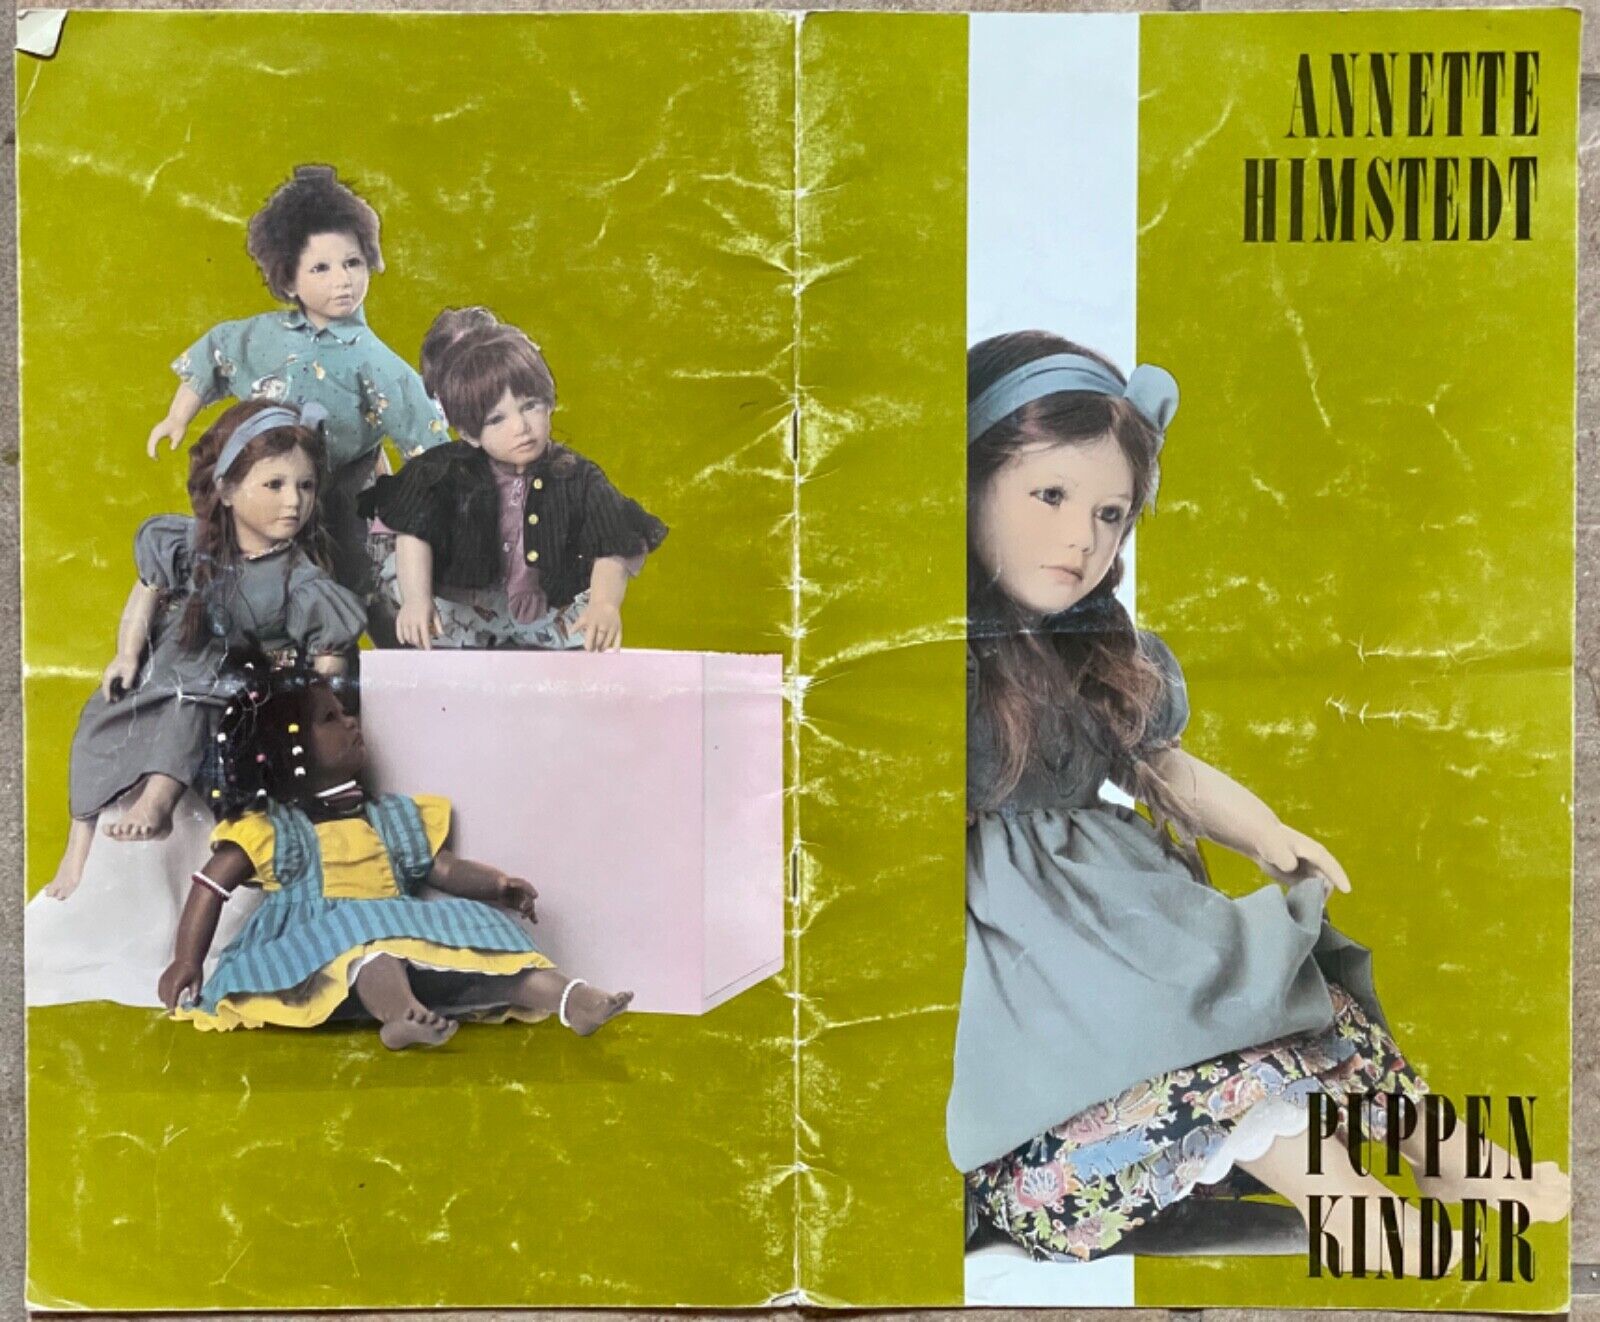 Annette Himstedt Puppen Kinder Doll 1989 12 Large color pages Good Cond. Mattel